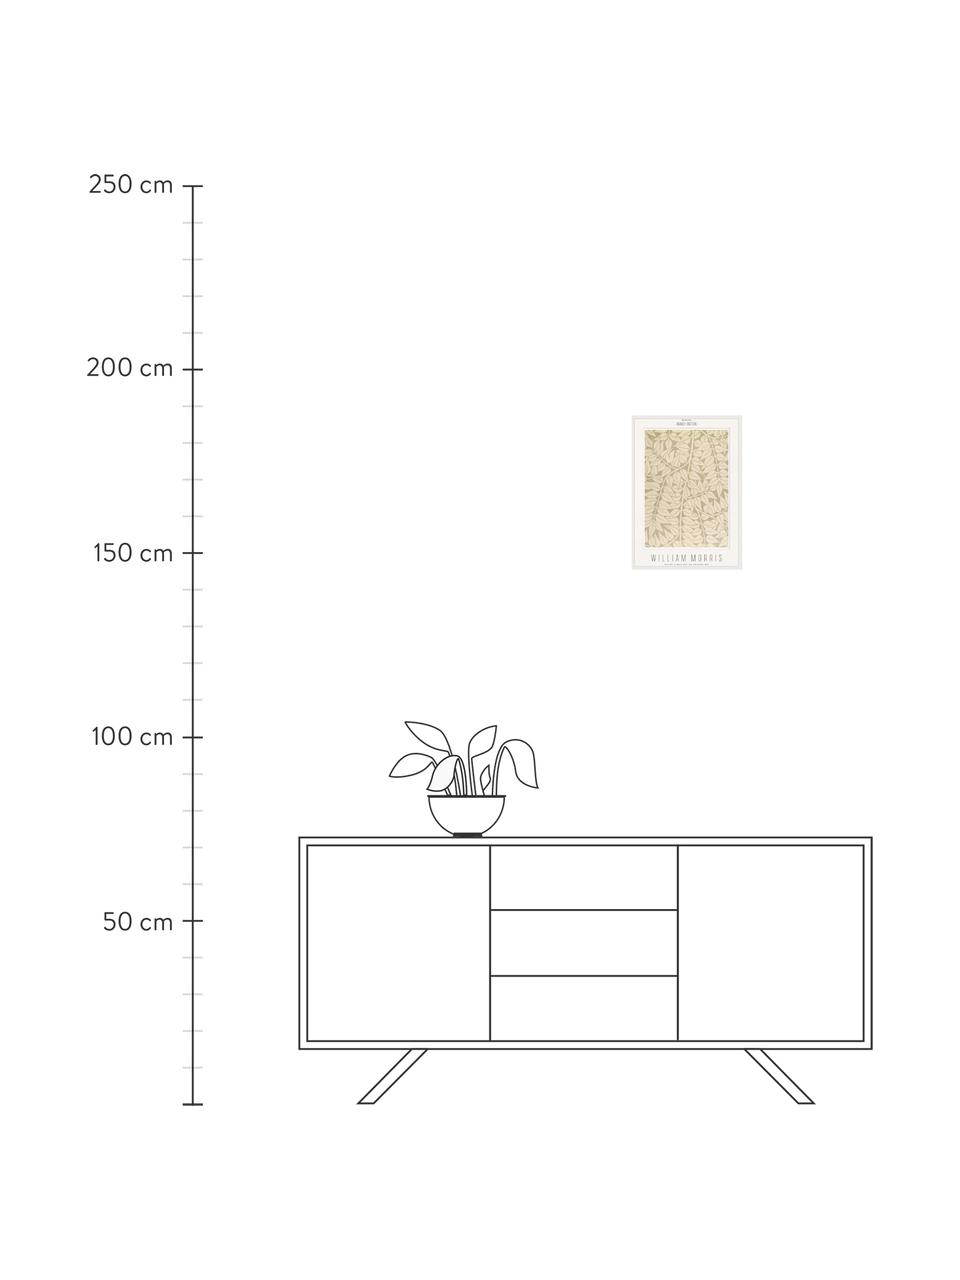 Impression numérique encadrée Branch - William Morris, Brun clair, larg. 32 x long. 42 cm